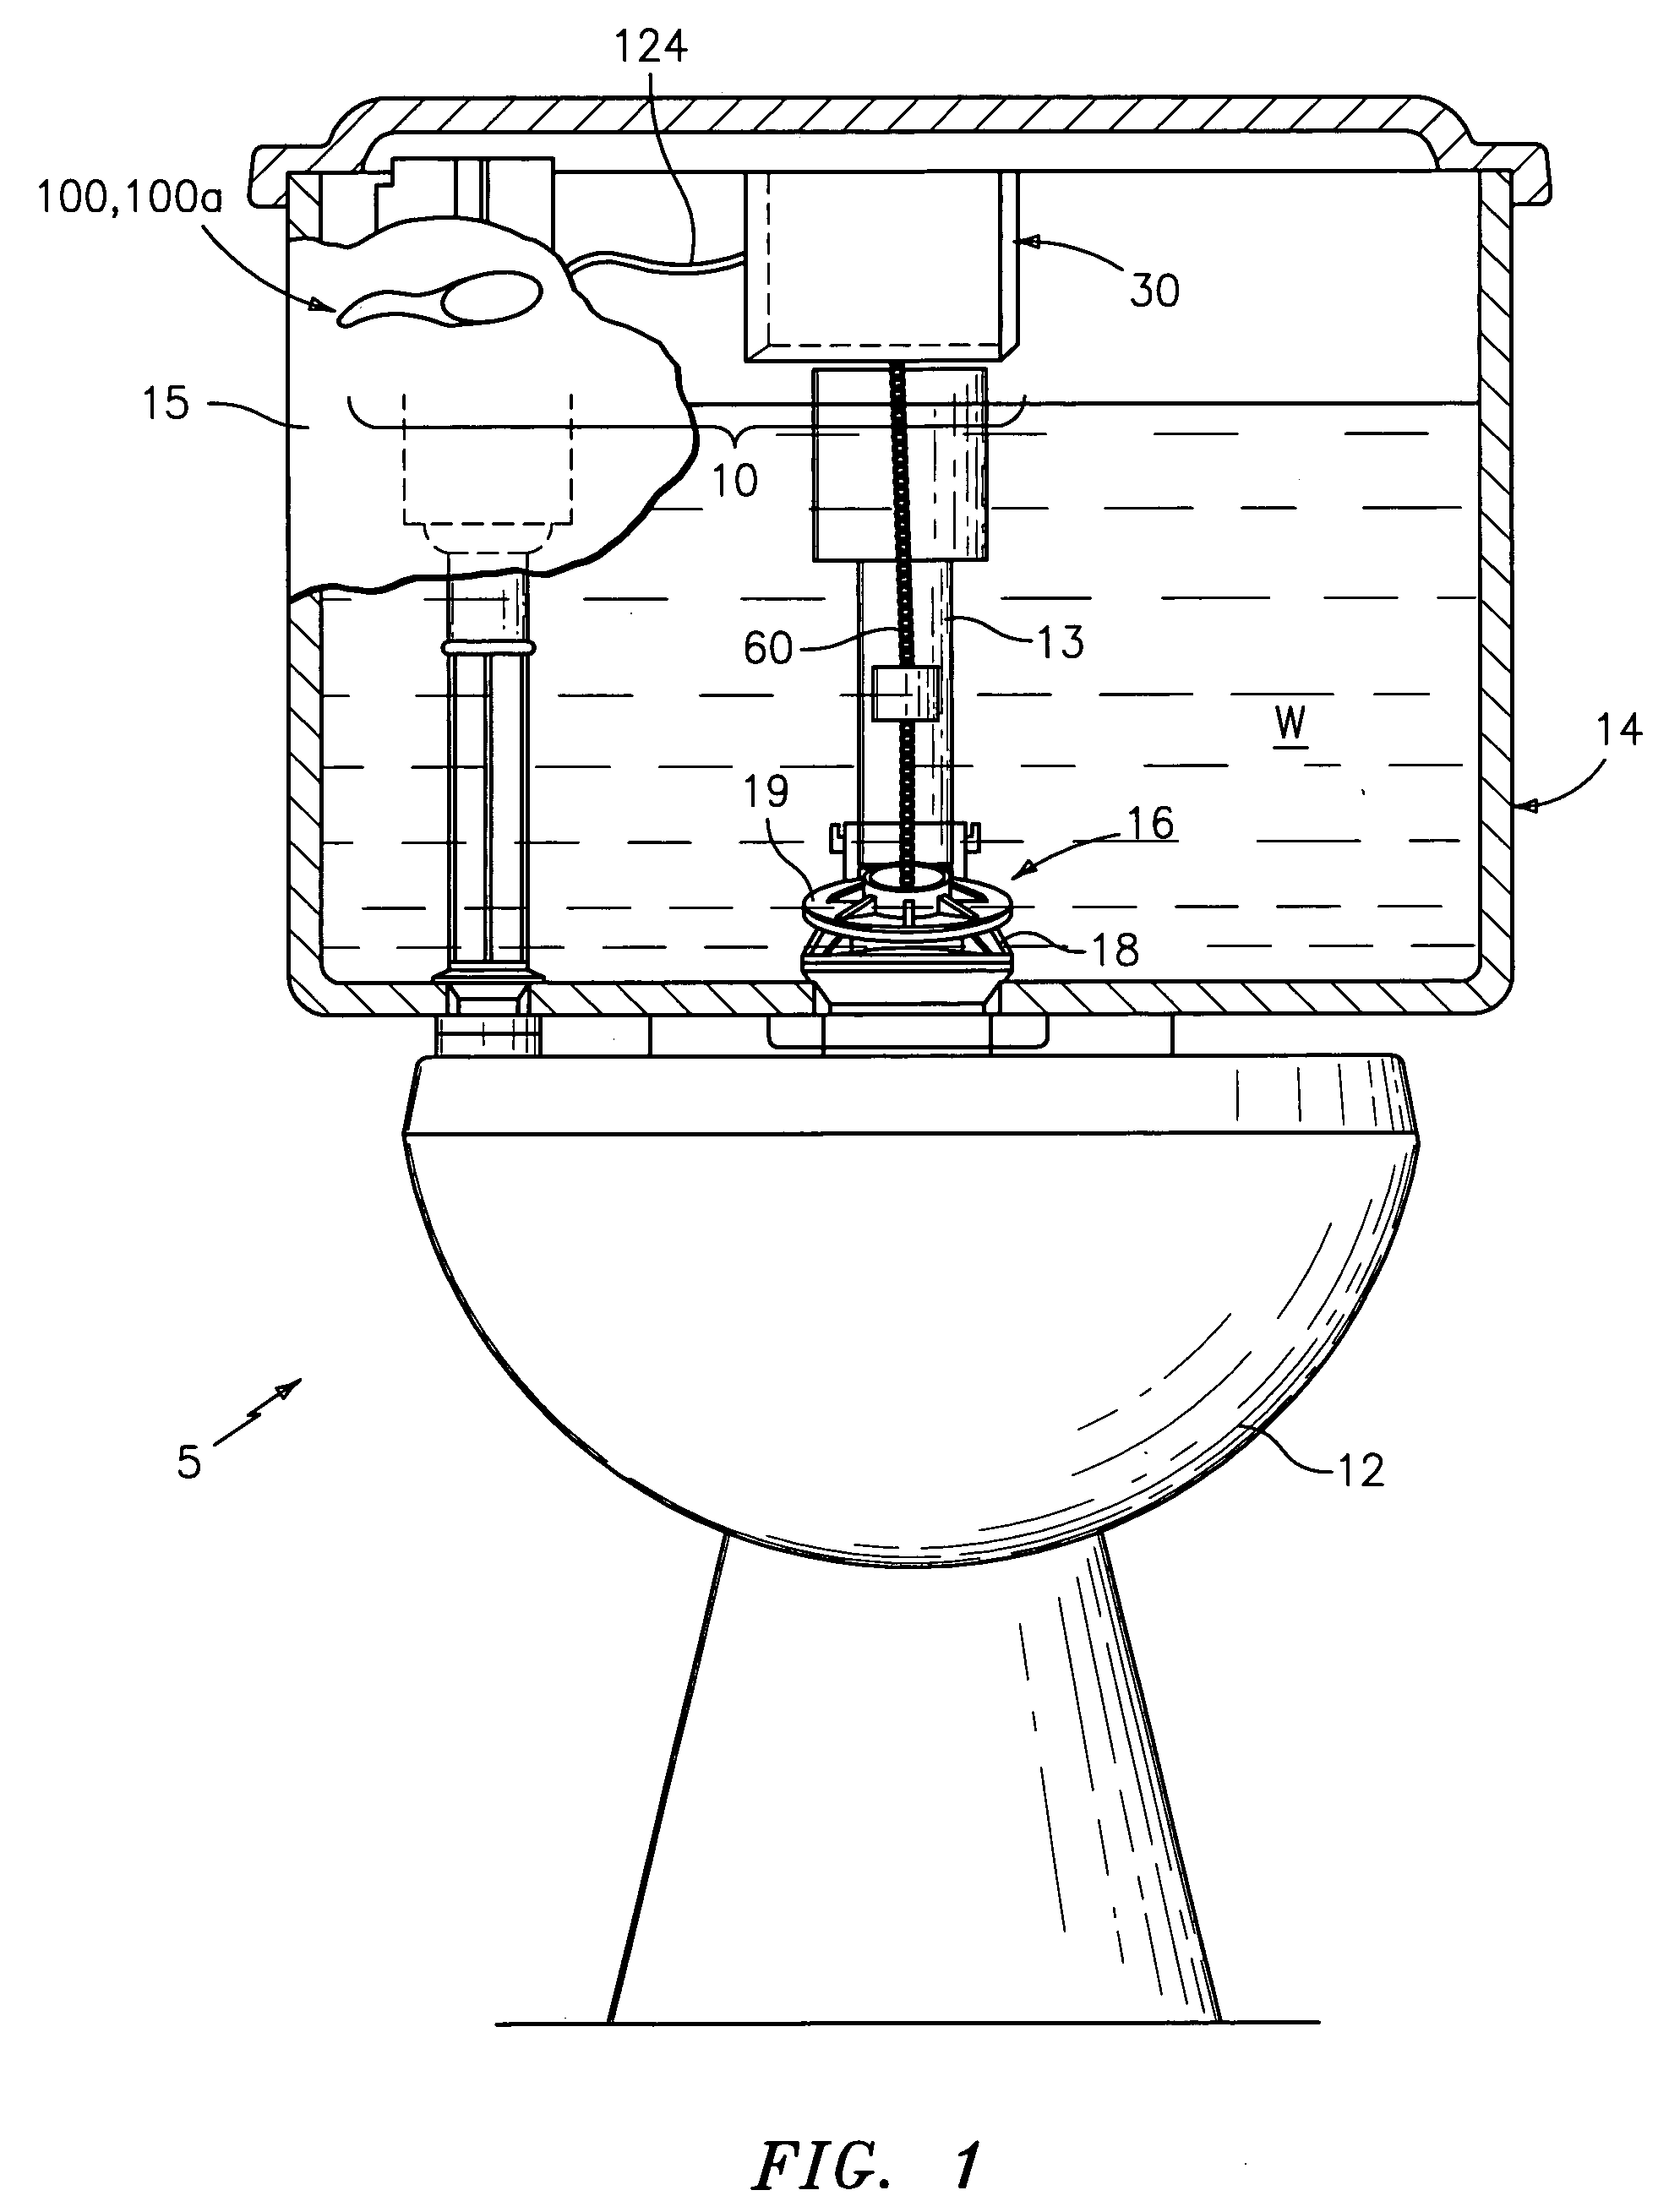 Tank toilet with autoflusher